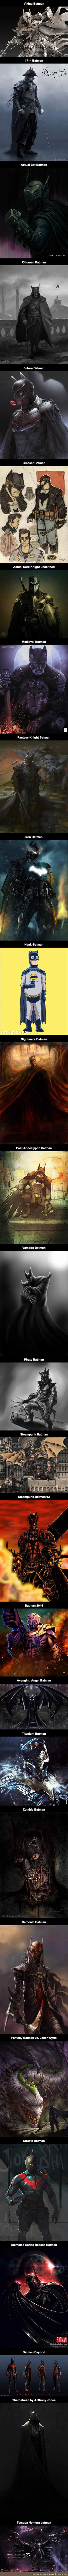 Epic alternate fan art takes on batman